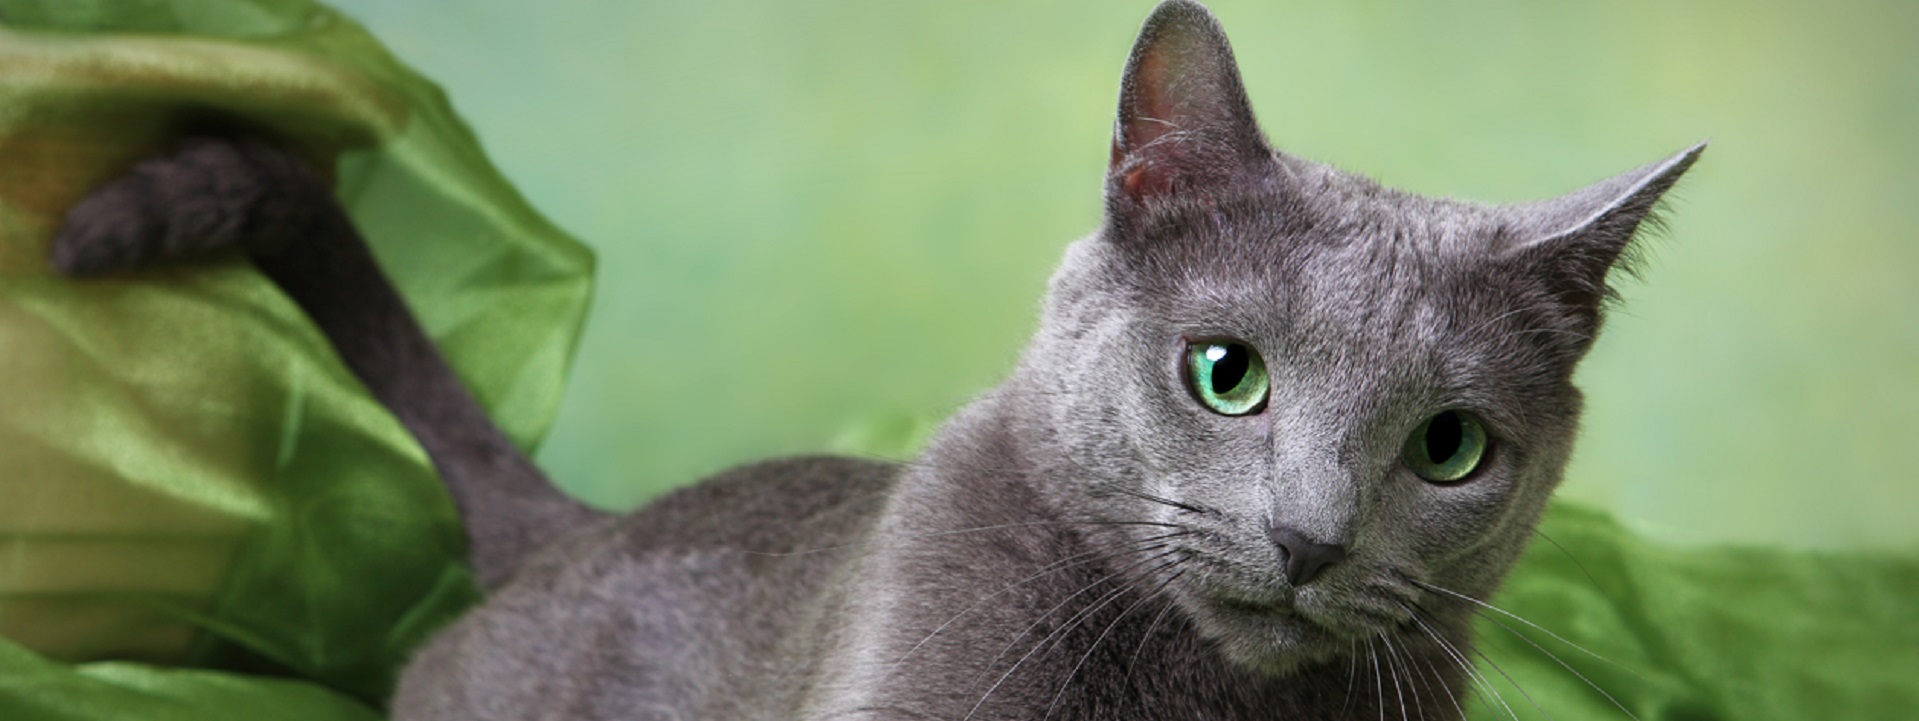 Русская голубая кошка: описание породы и характера